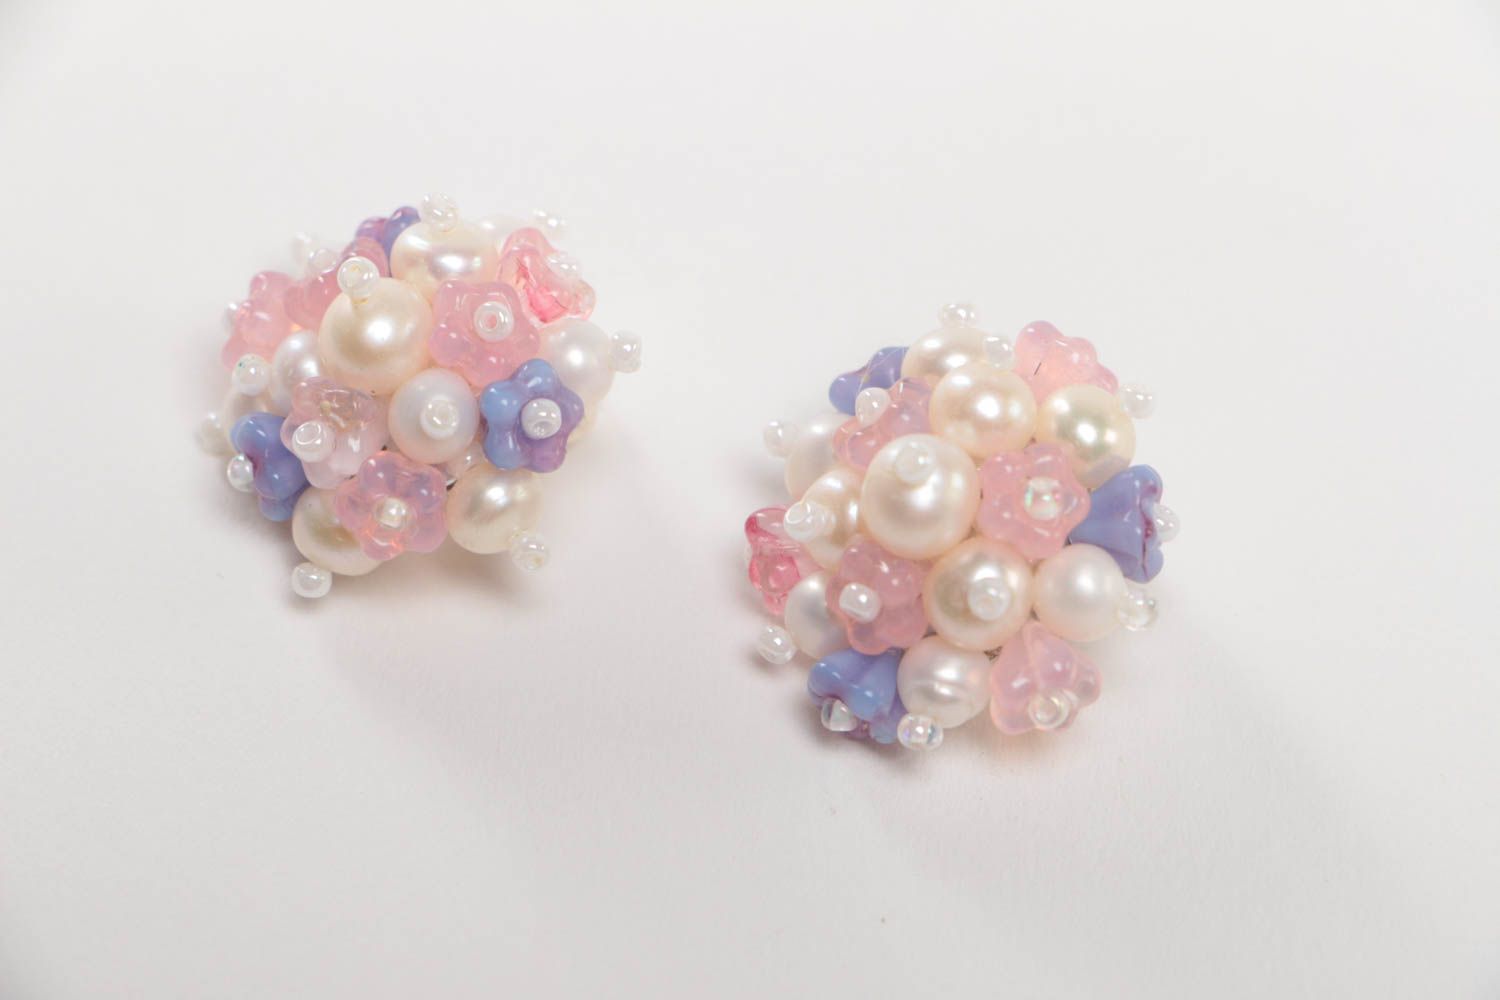 Handmade earrings designer earrings for girl unusual gift stone jewelry photo 2